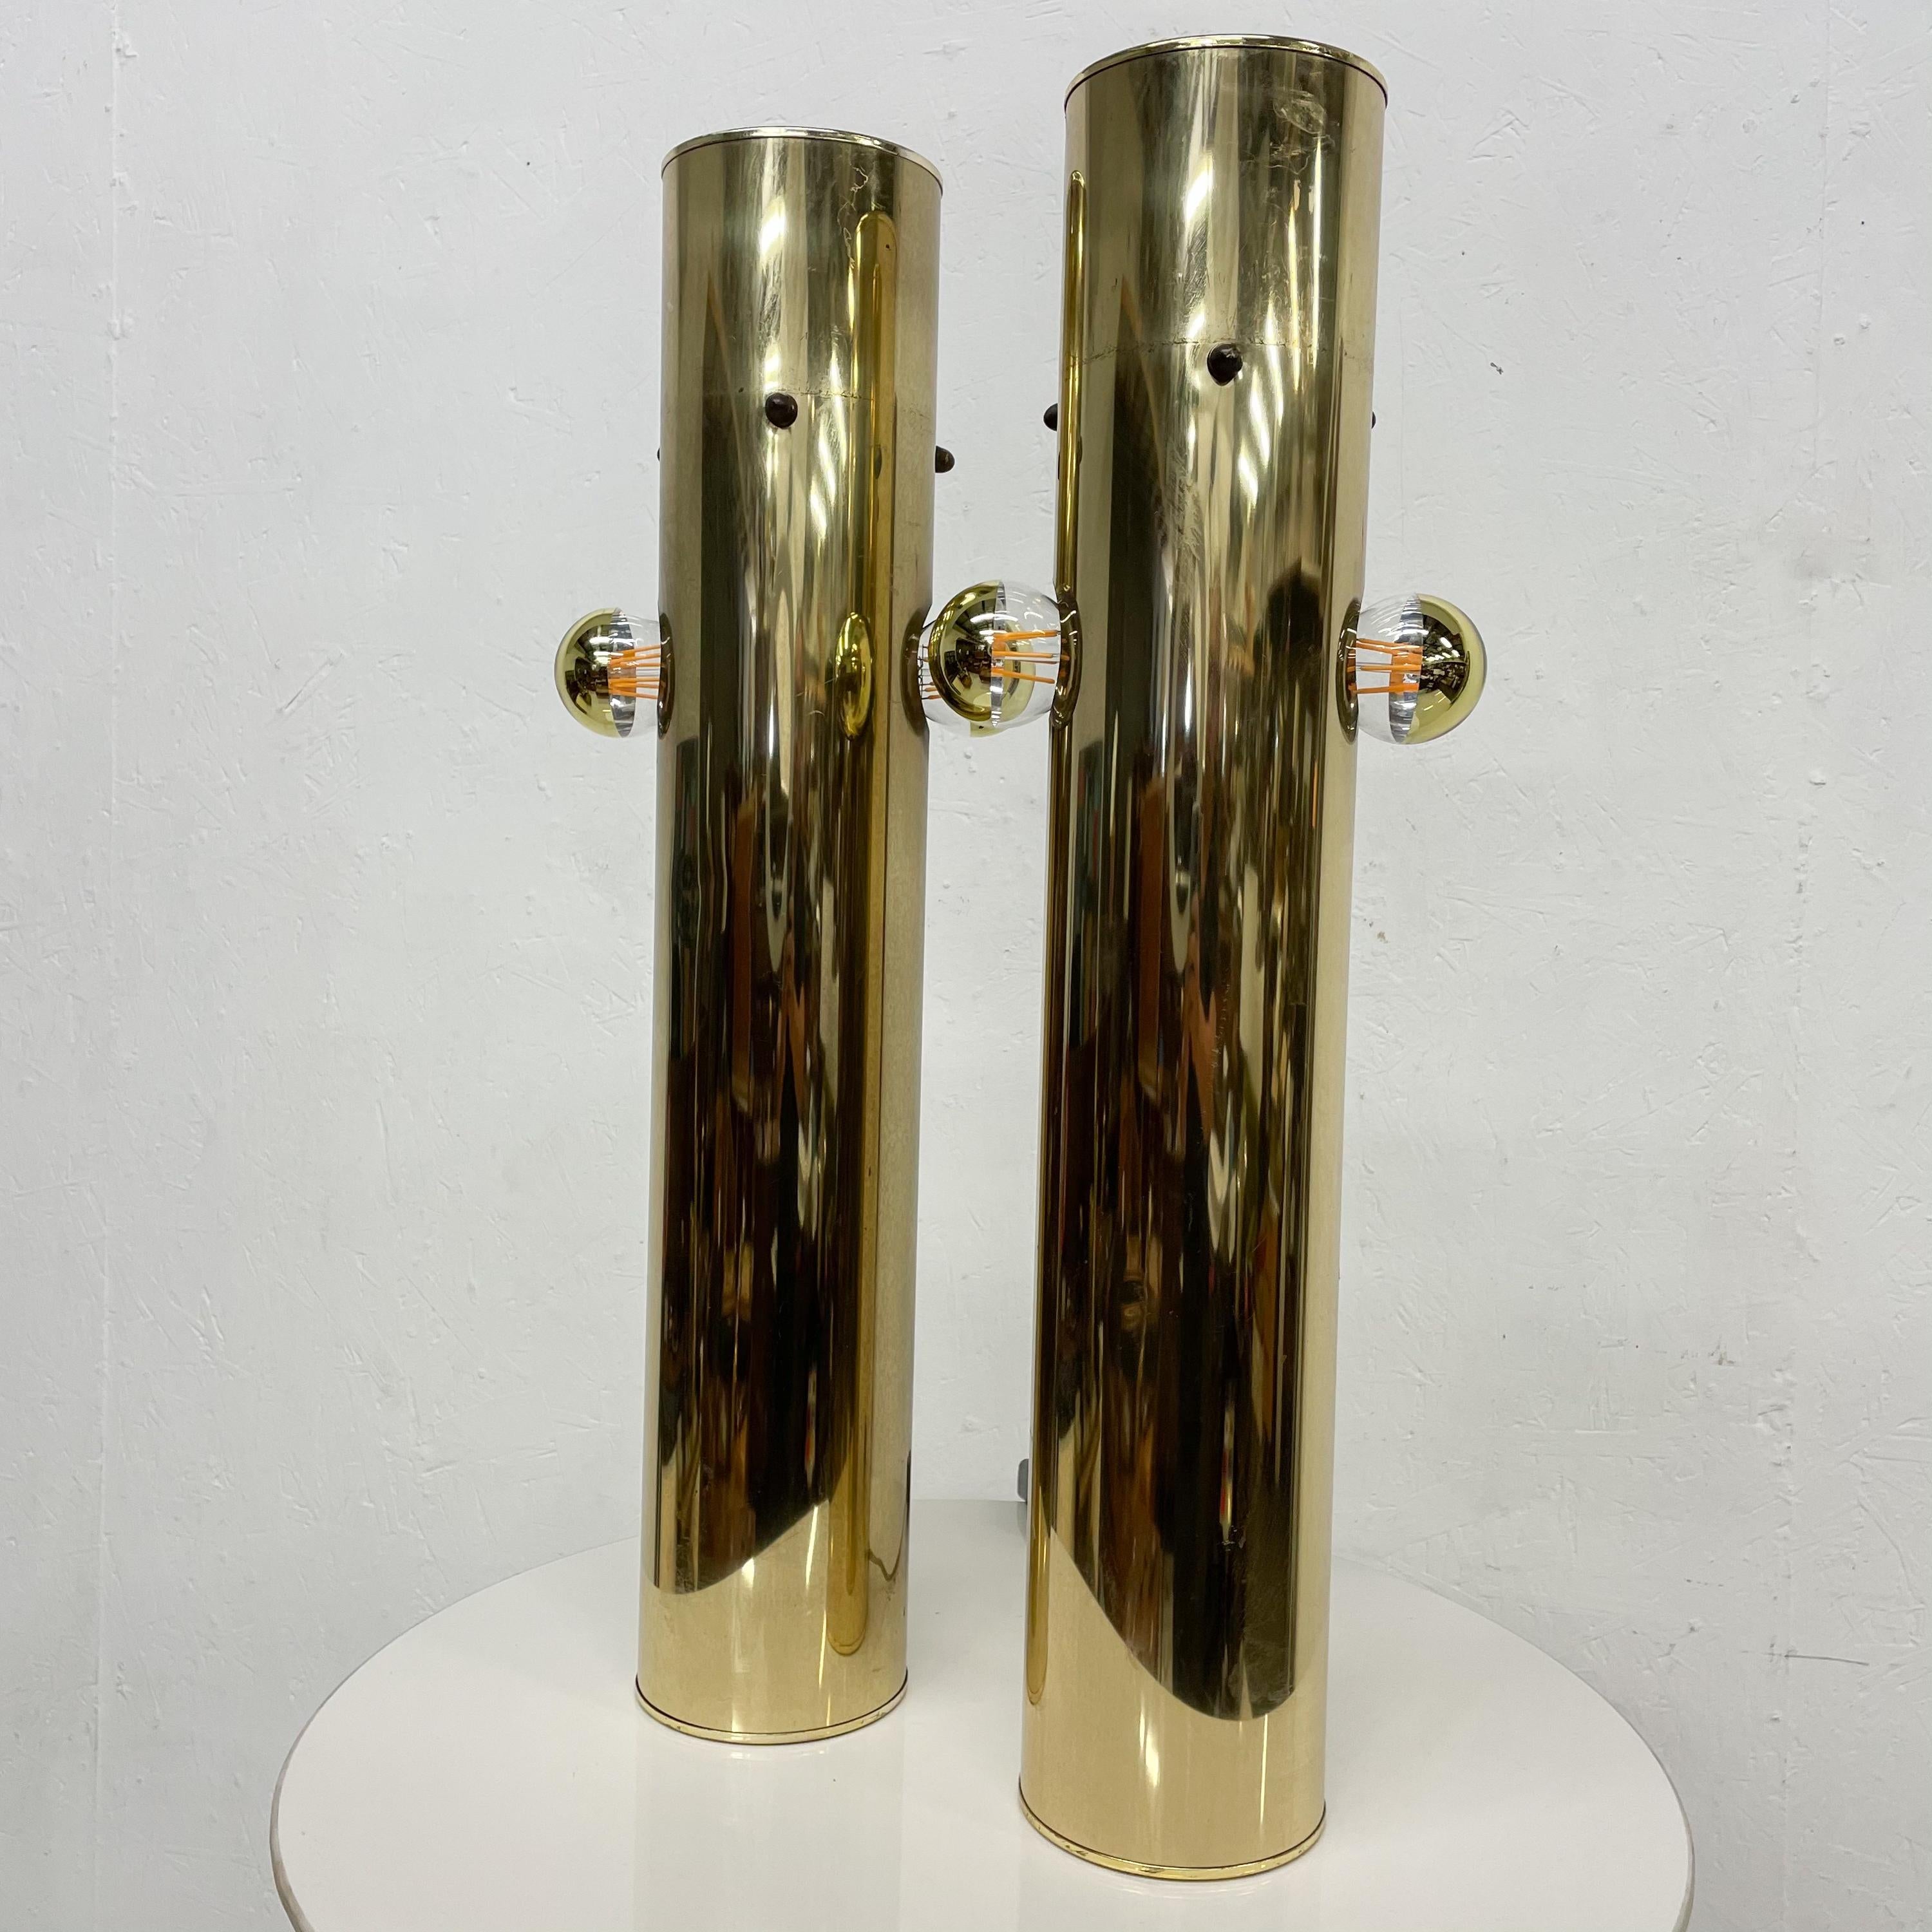 1970 Modern Cylinder Table Lamp Pair Pop Art Sculptural Style of Robert Sonneman.
Aucune vérification n'a été effectuée.
Nouveau câblage avec variateur de lumière. Comprend deux ampoules.
Original Preowned Vintage Unrestored condition. 
Éraflures et